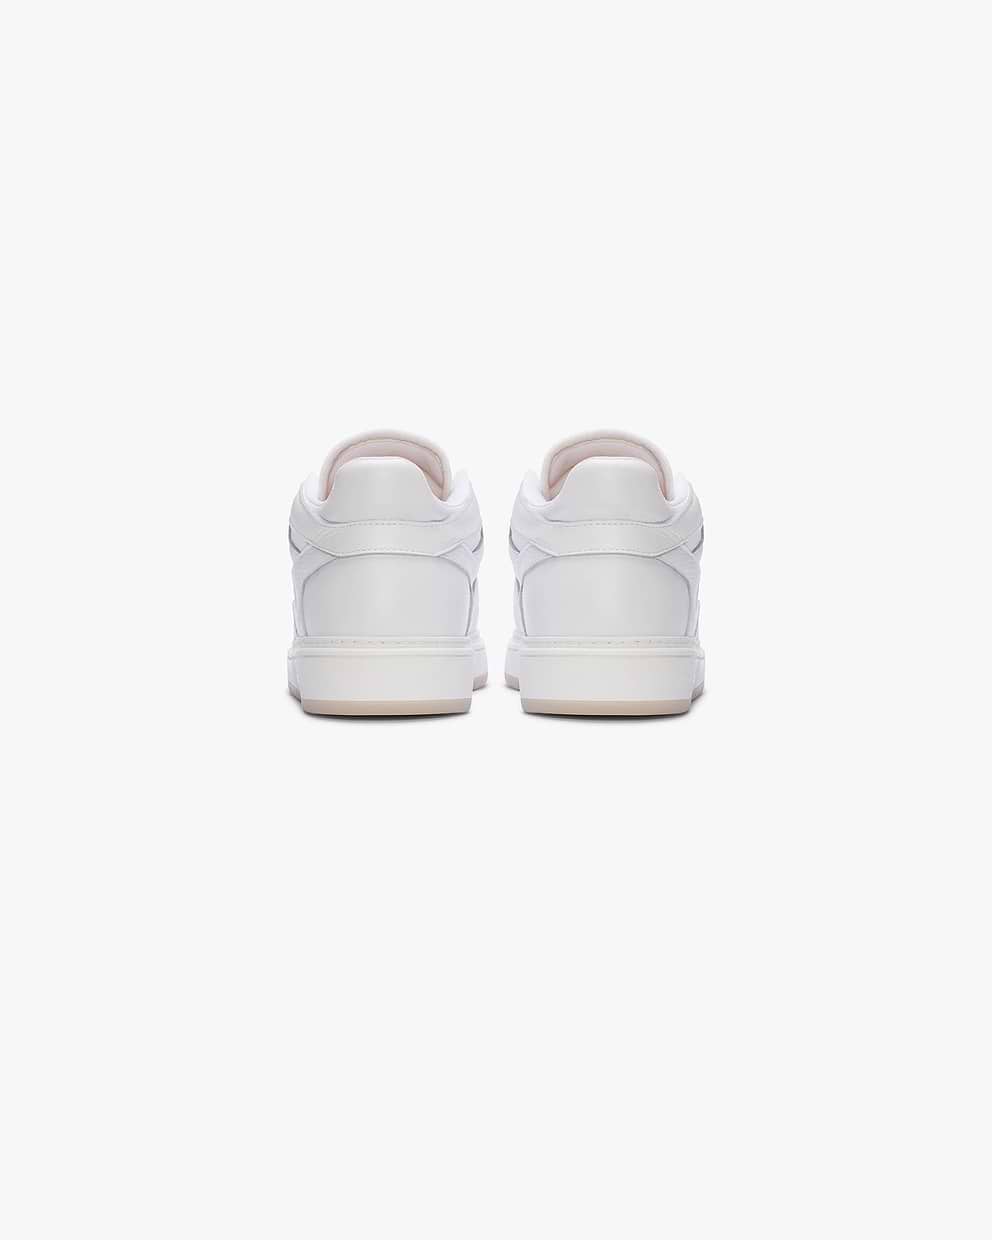 Reptor Low Sneakers | Flat White | REPRESENT CLO